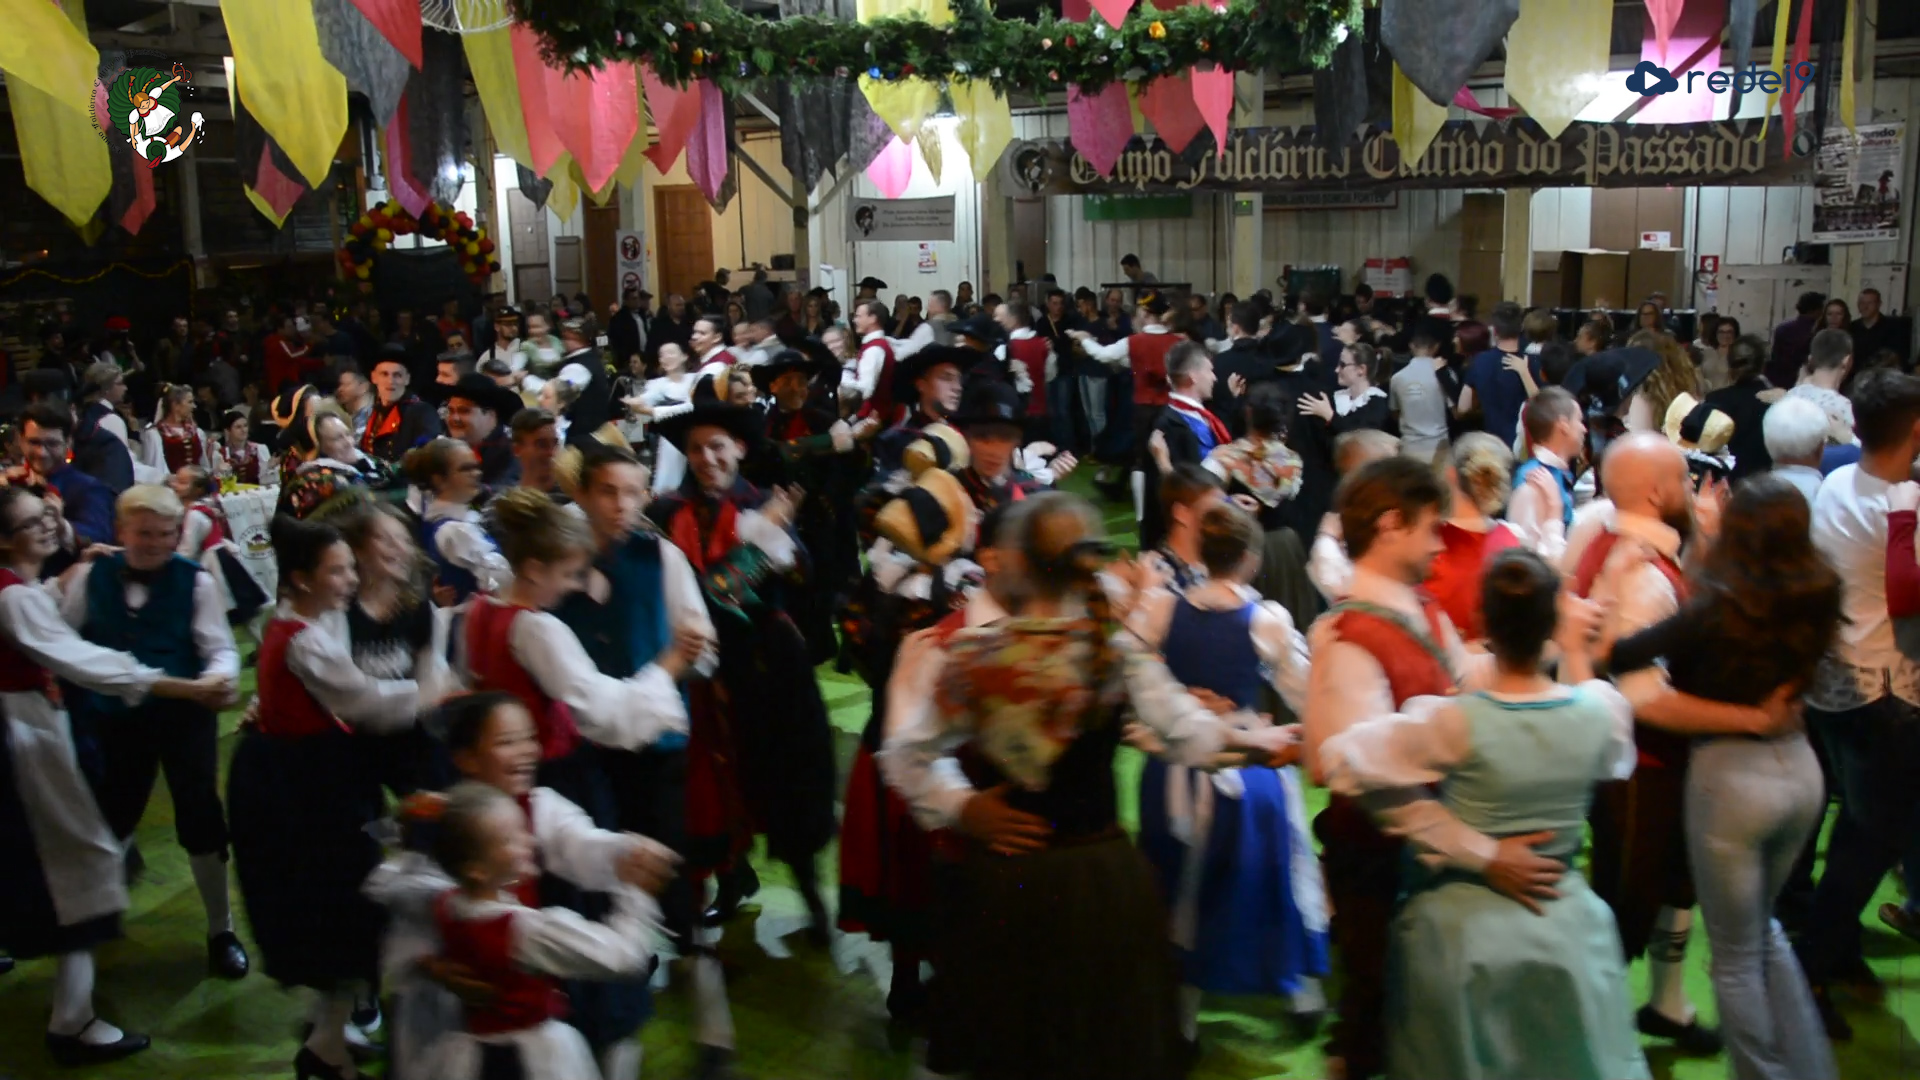 35º SauerKraut Spielfest – Grupo Folclórico Cultivo do Passado